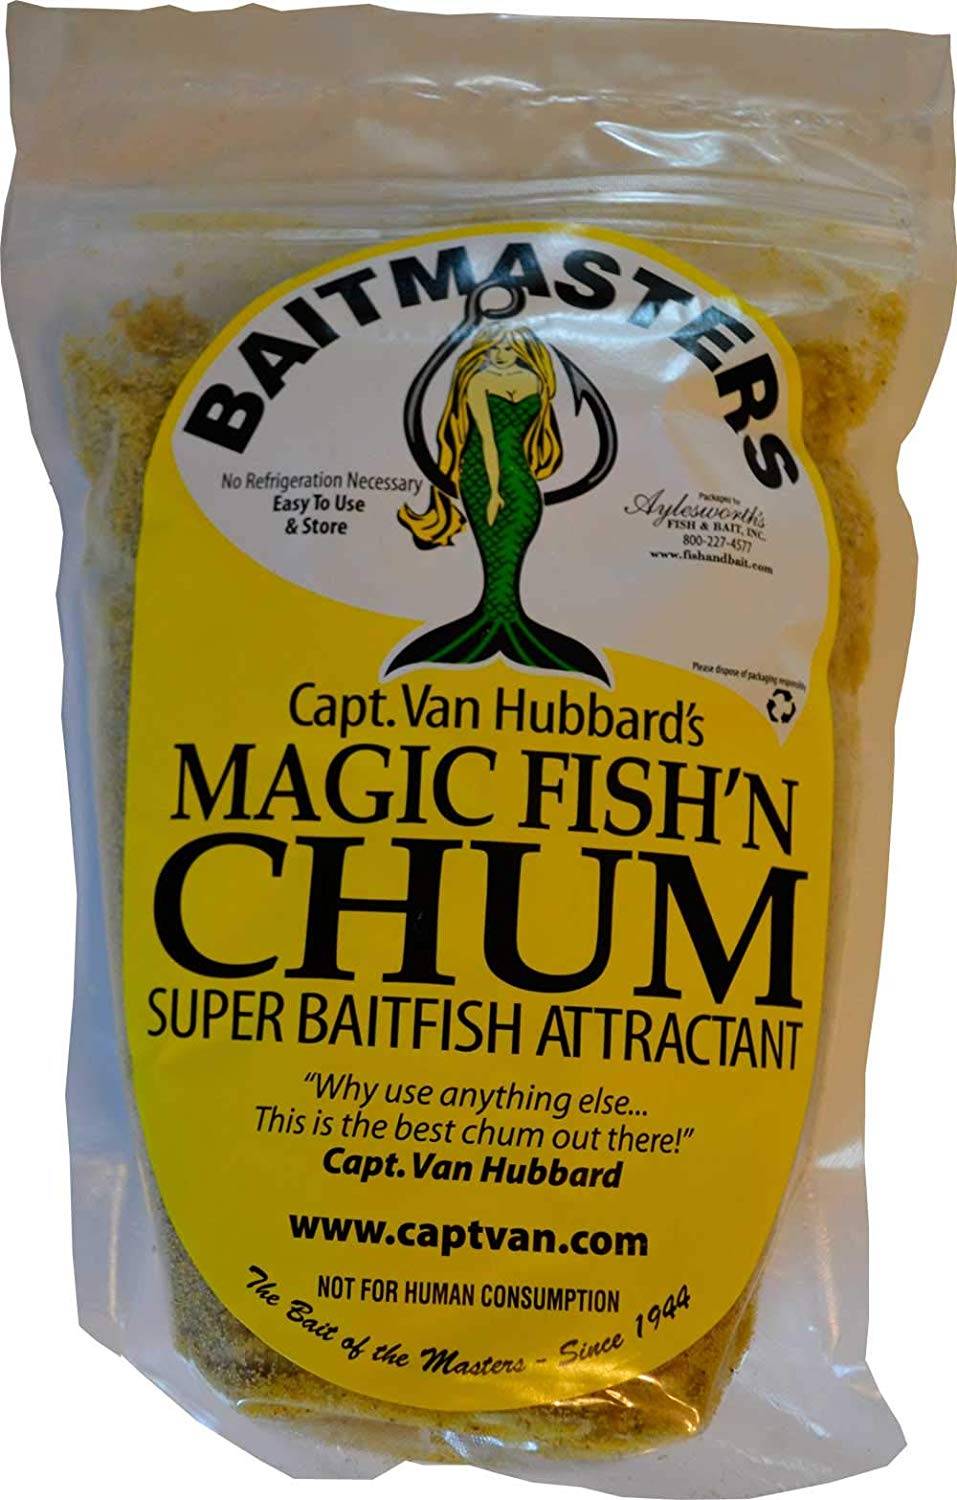 Baitmasters Magic Fish'n Chum